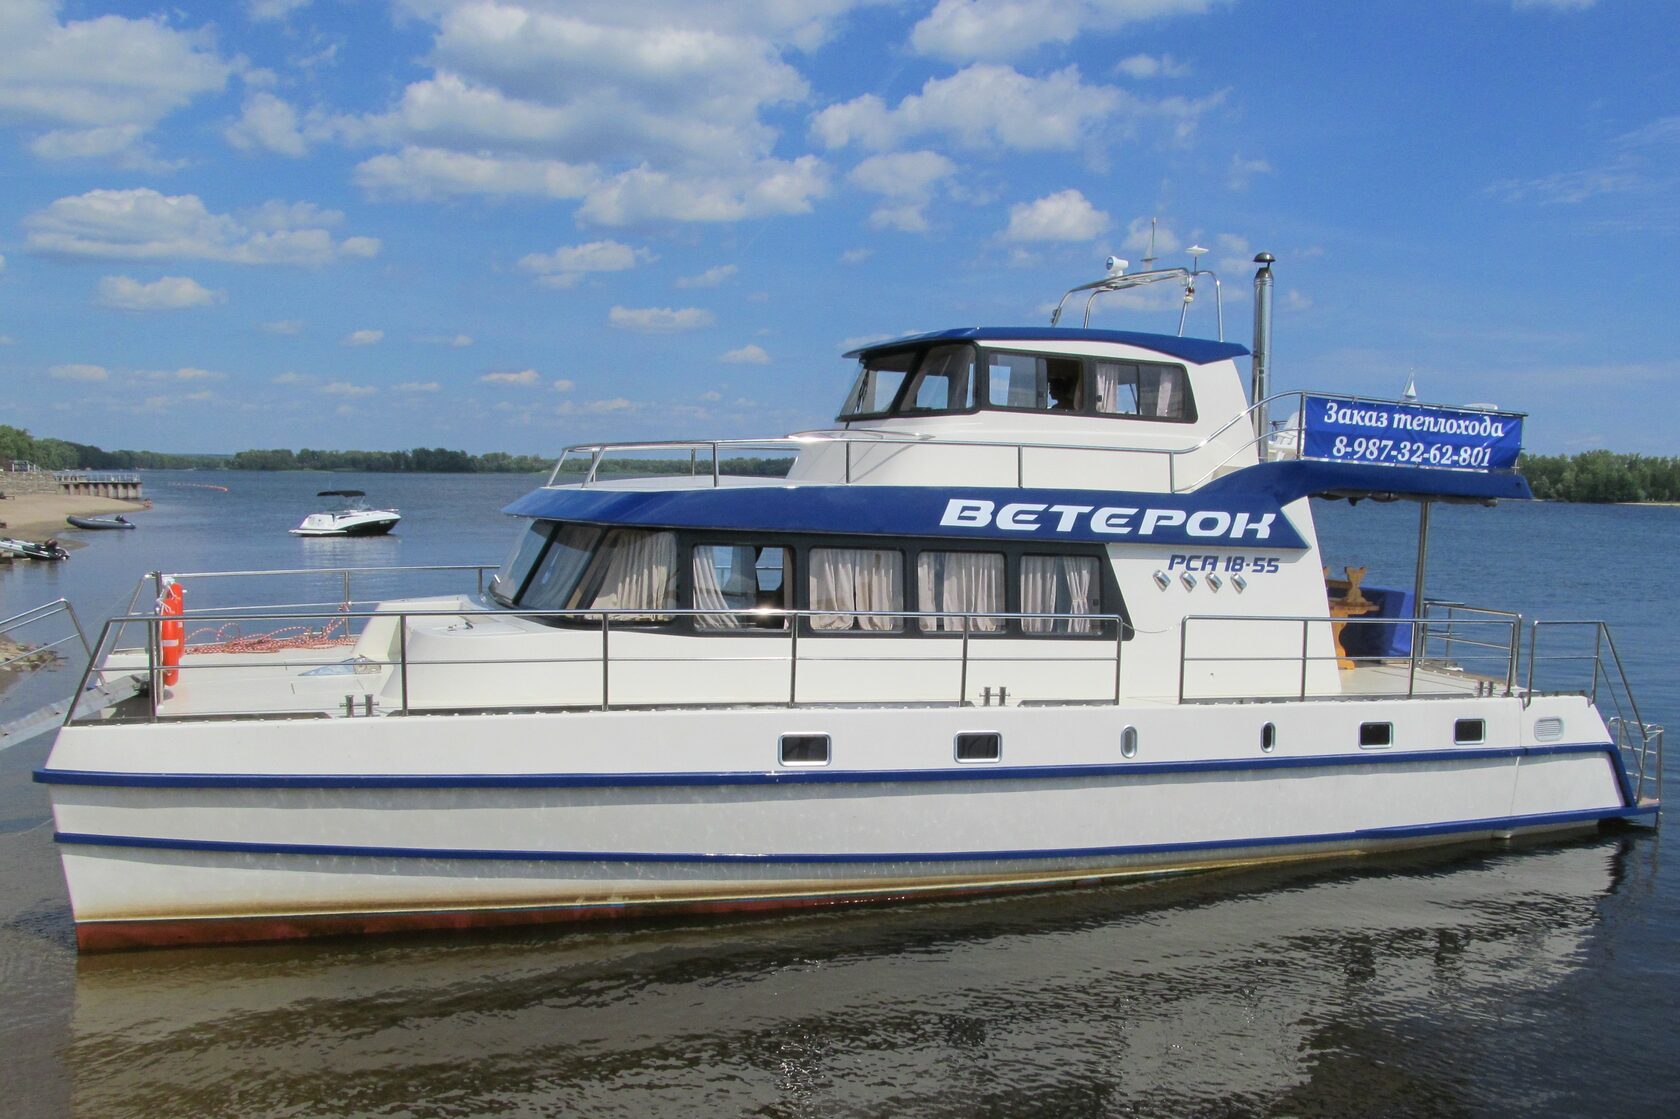 Порекомендуйте лодку под Ветерок-8 : Лодки. Моторы.